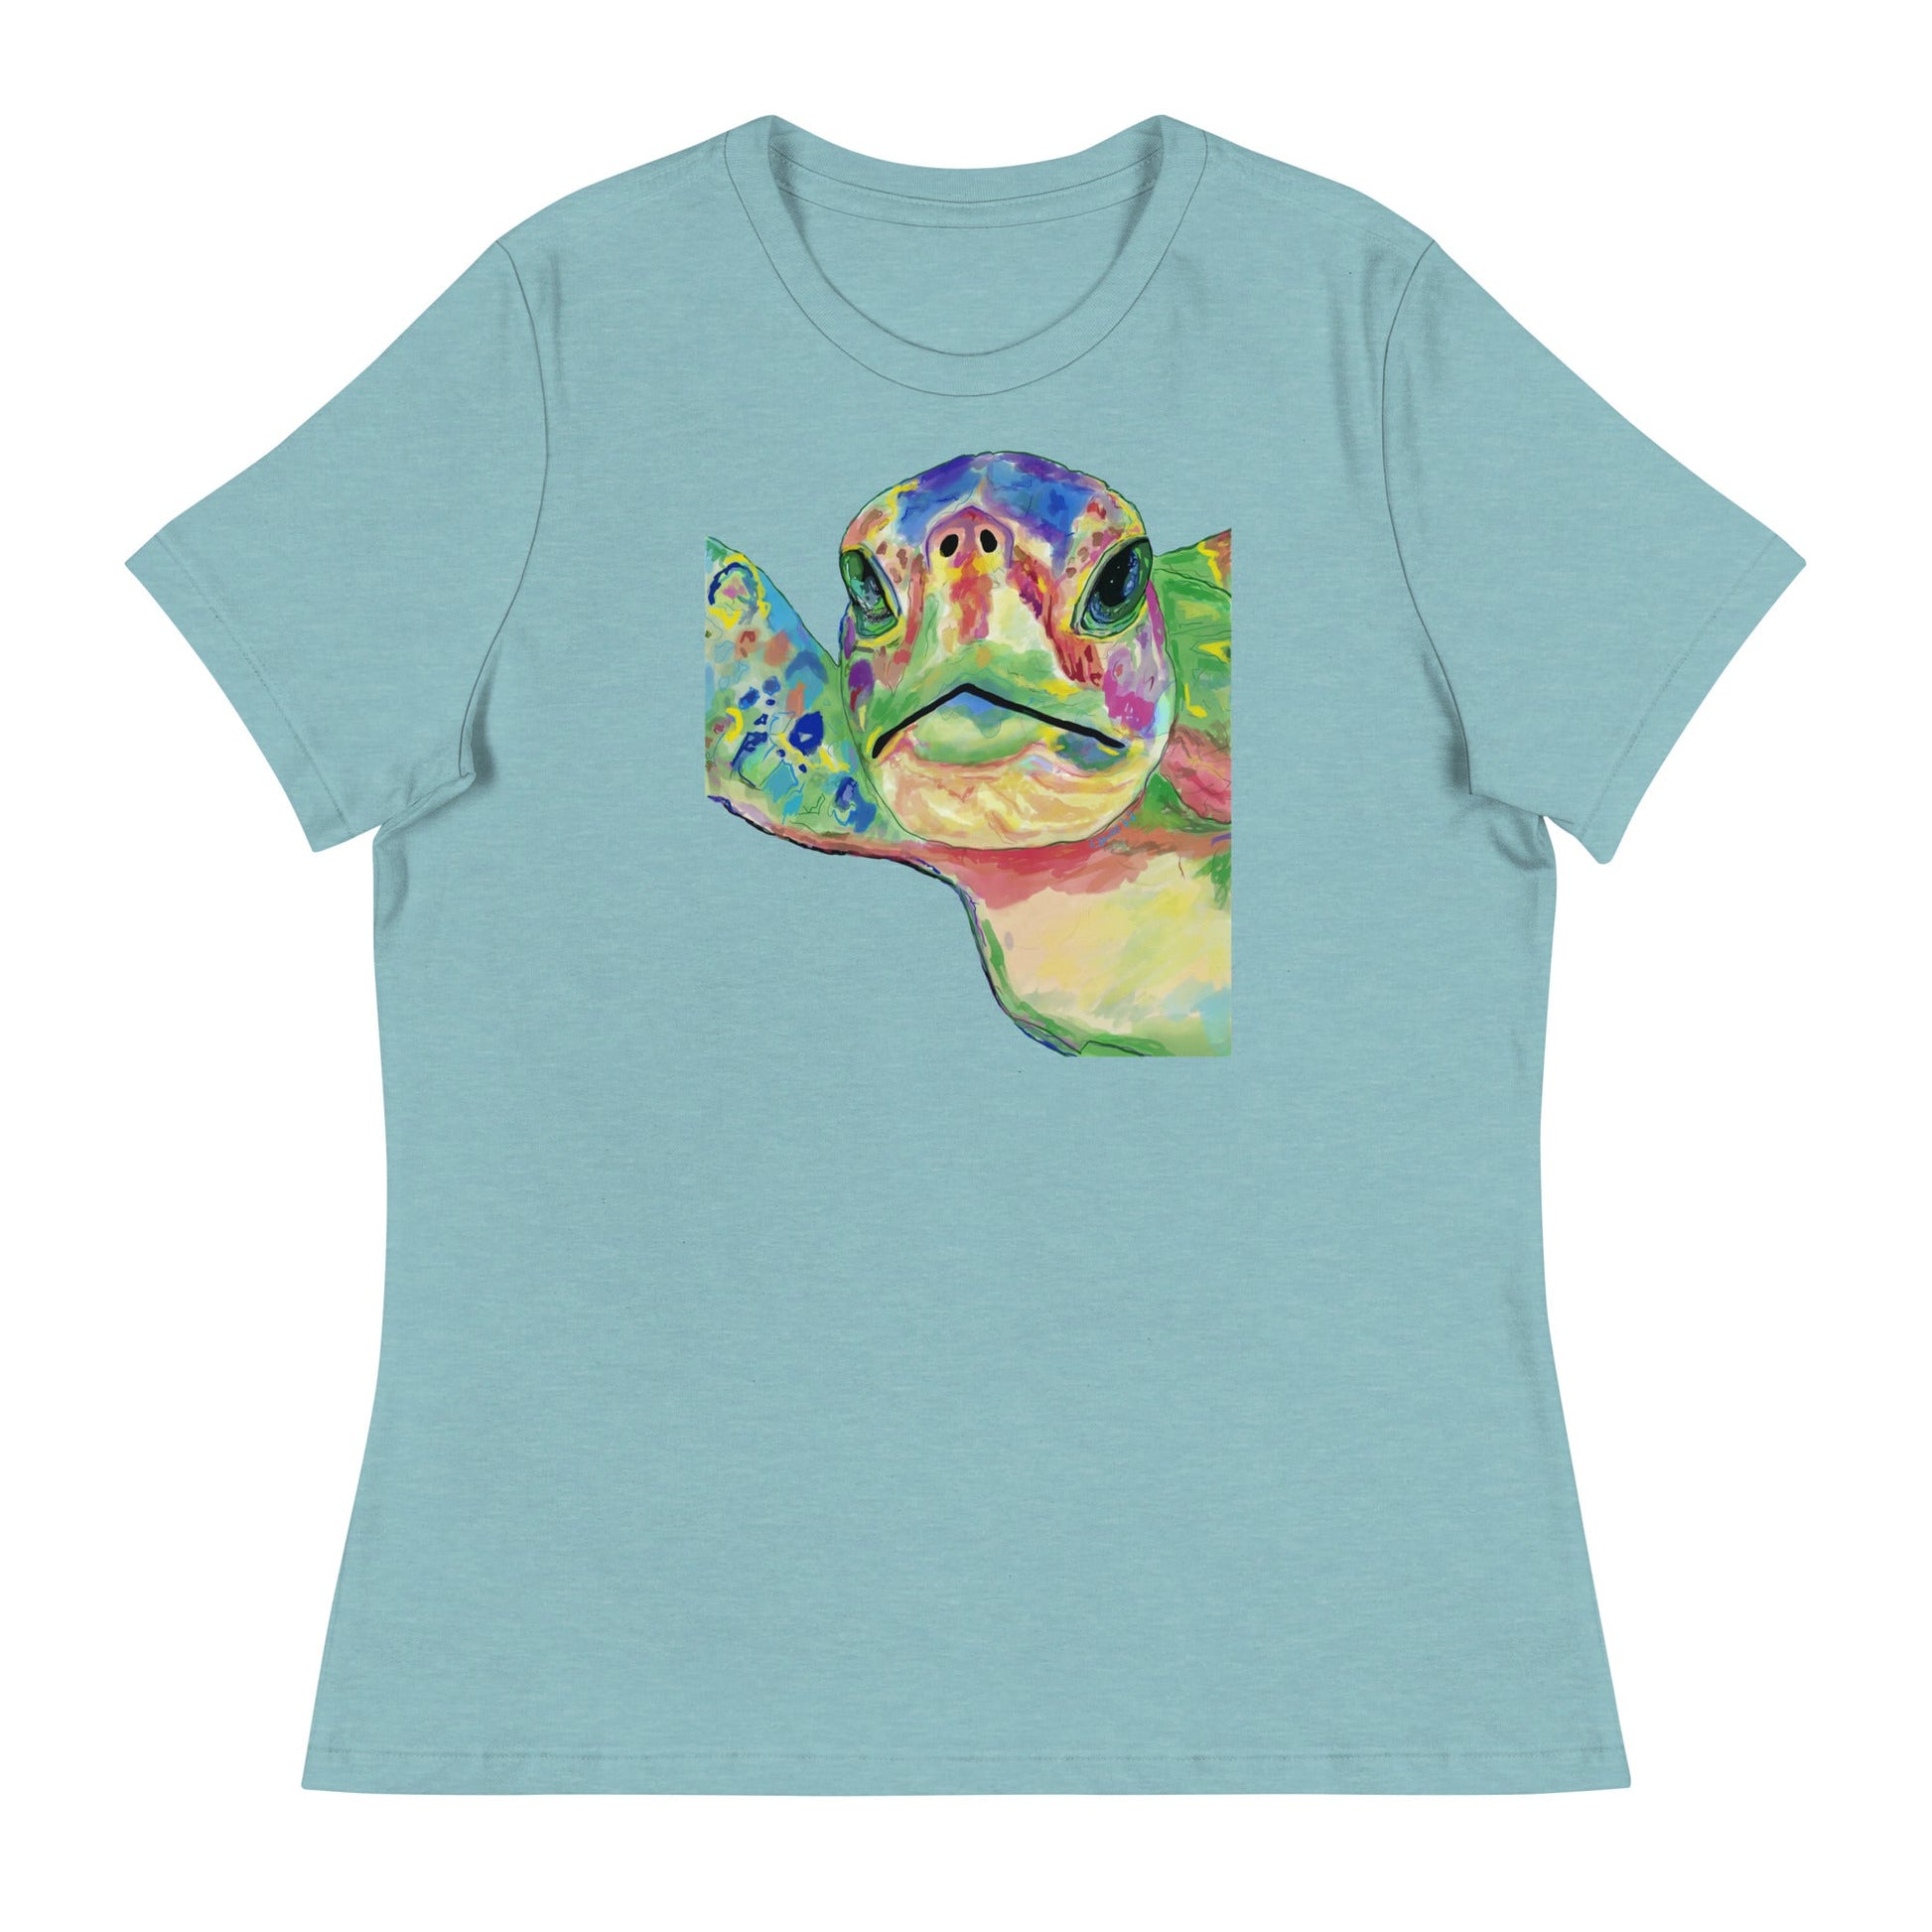 Rainbow Sea Turtle T-shirt (Multiple color options) - Blue Cava